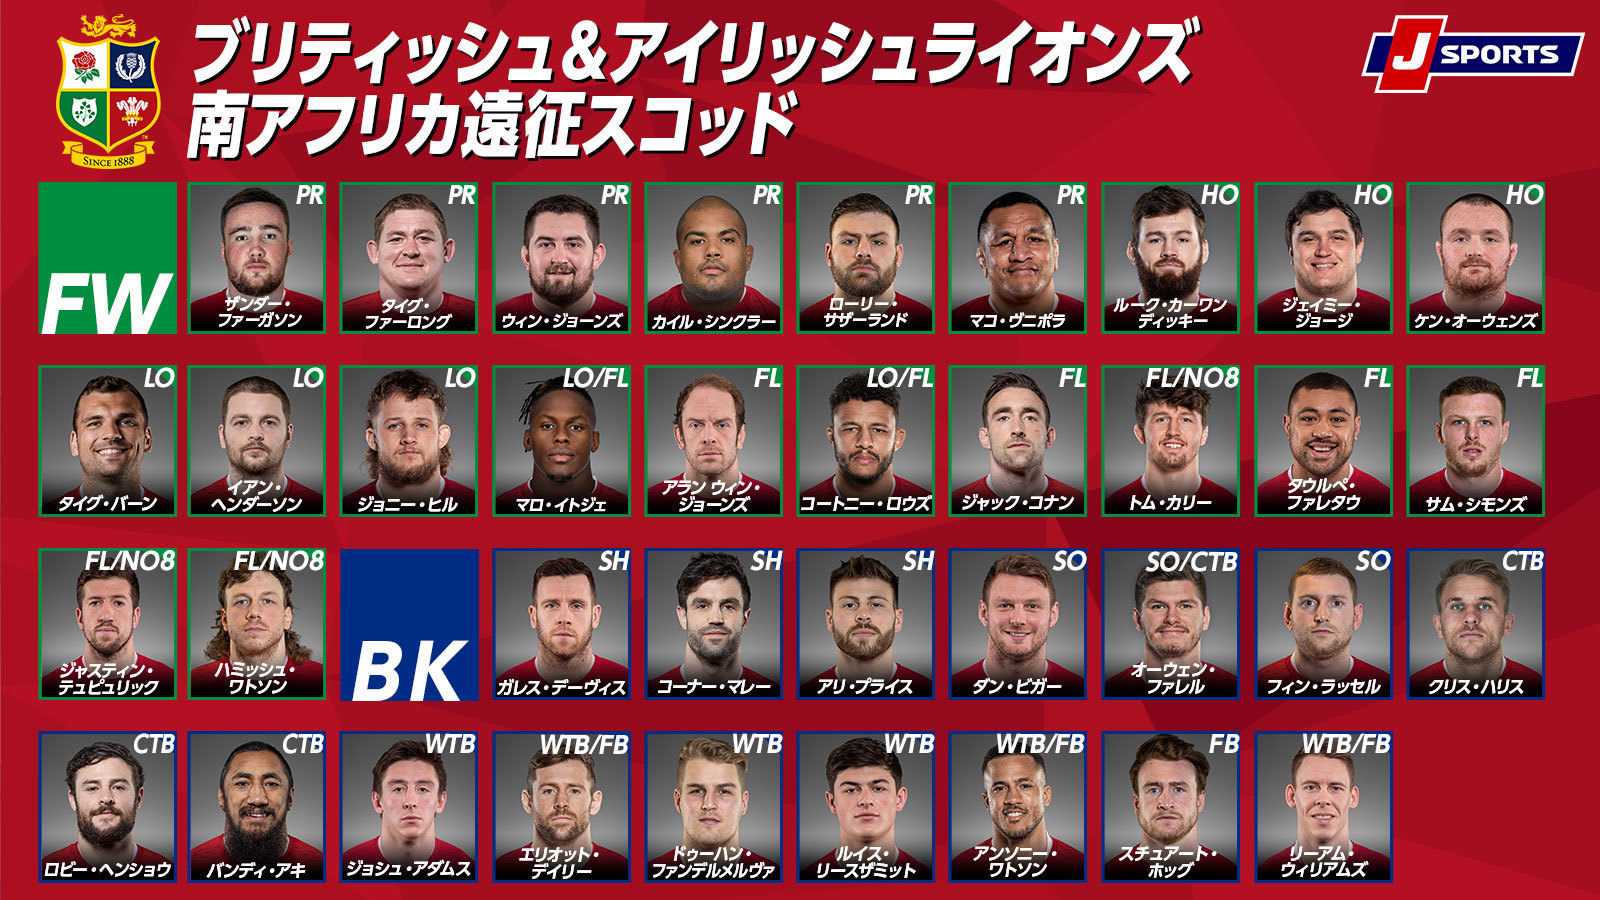 ラグビーワールドカップ2023へ 新生JAPAN始動 ジェイミー・ジョセフヘッドコーチの想い | ラグビーのコラム | J SPORTSコラム